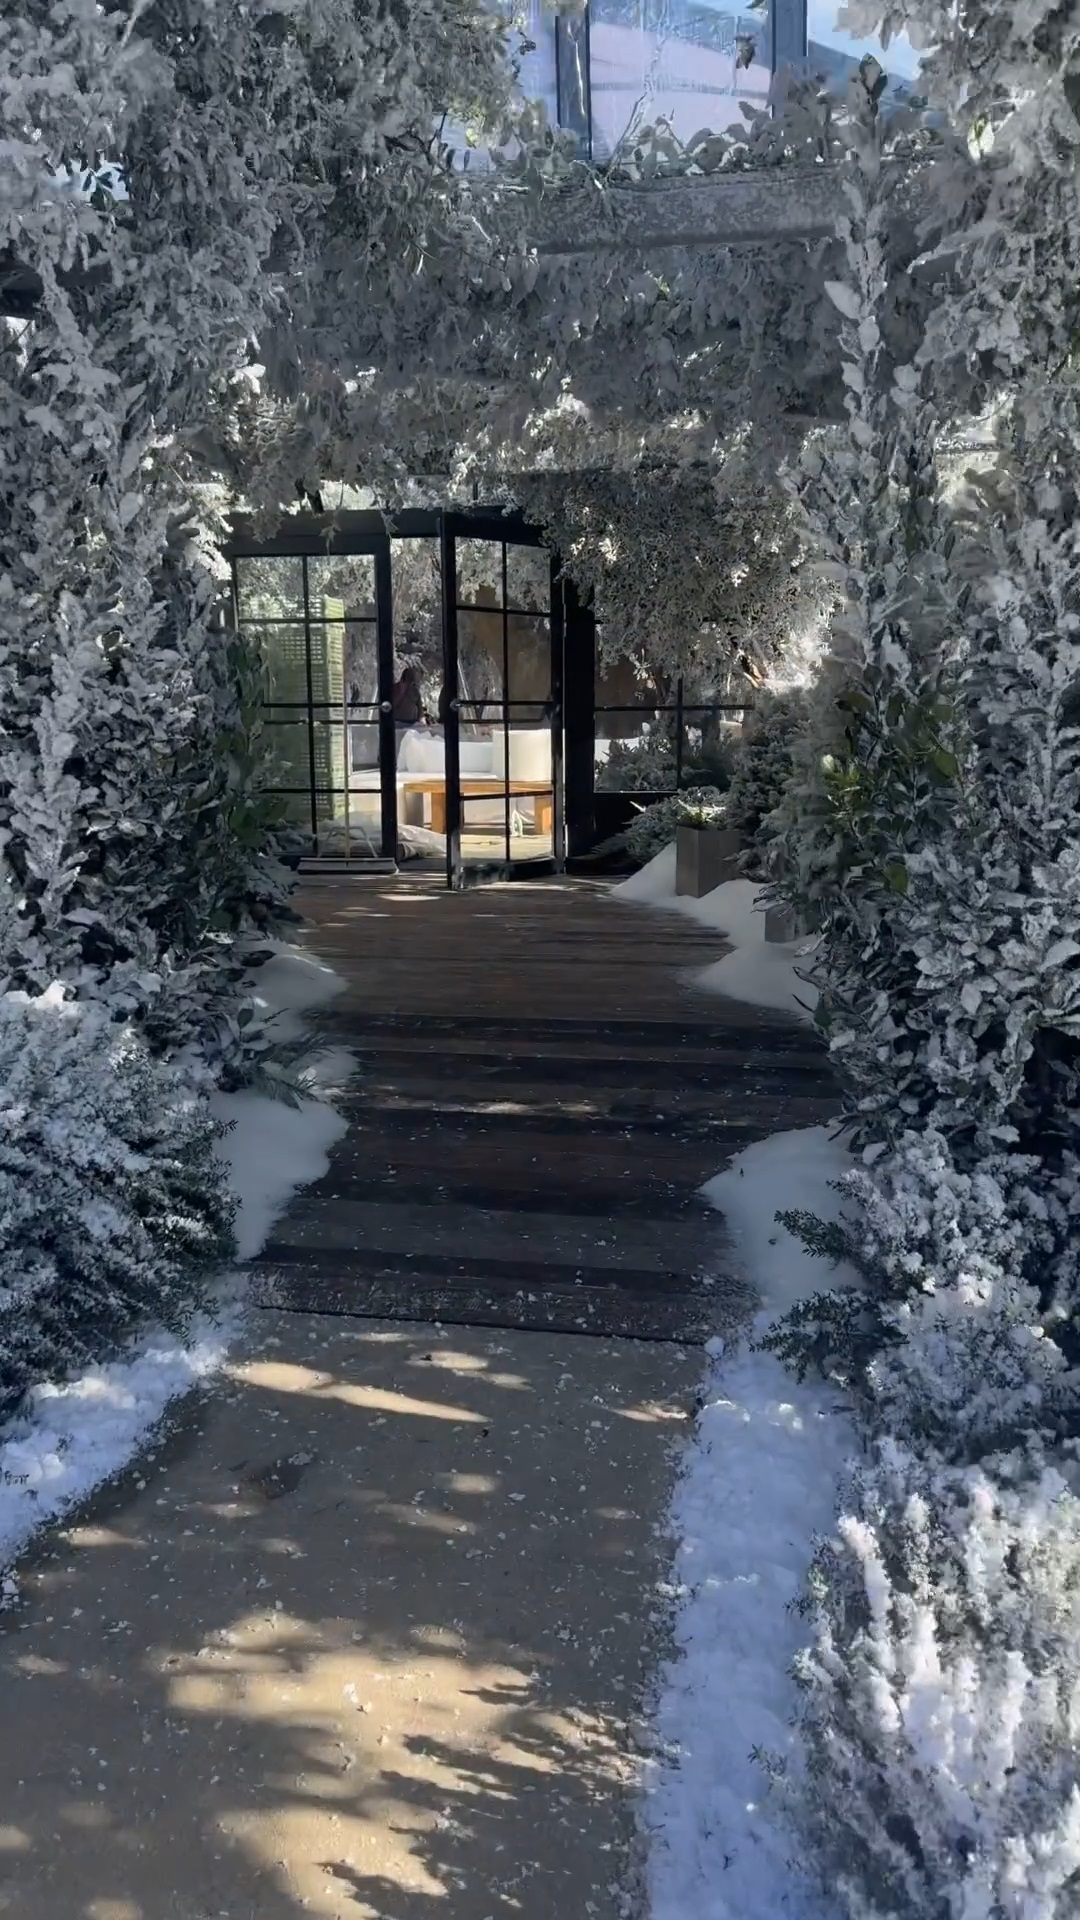 Ким Кардашьян потратила 60 000 долларов, чтобы засыпать свое поместье в Лос Анджелесе искусственным снегом и покататься на санках. Топ фото и видео с места событий